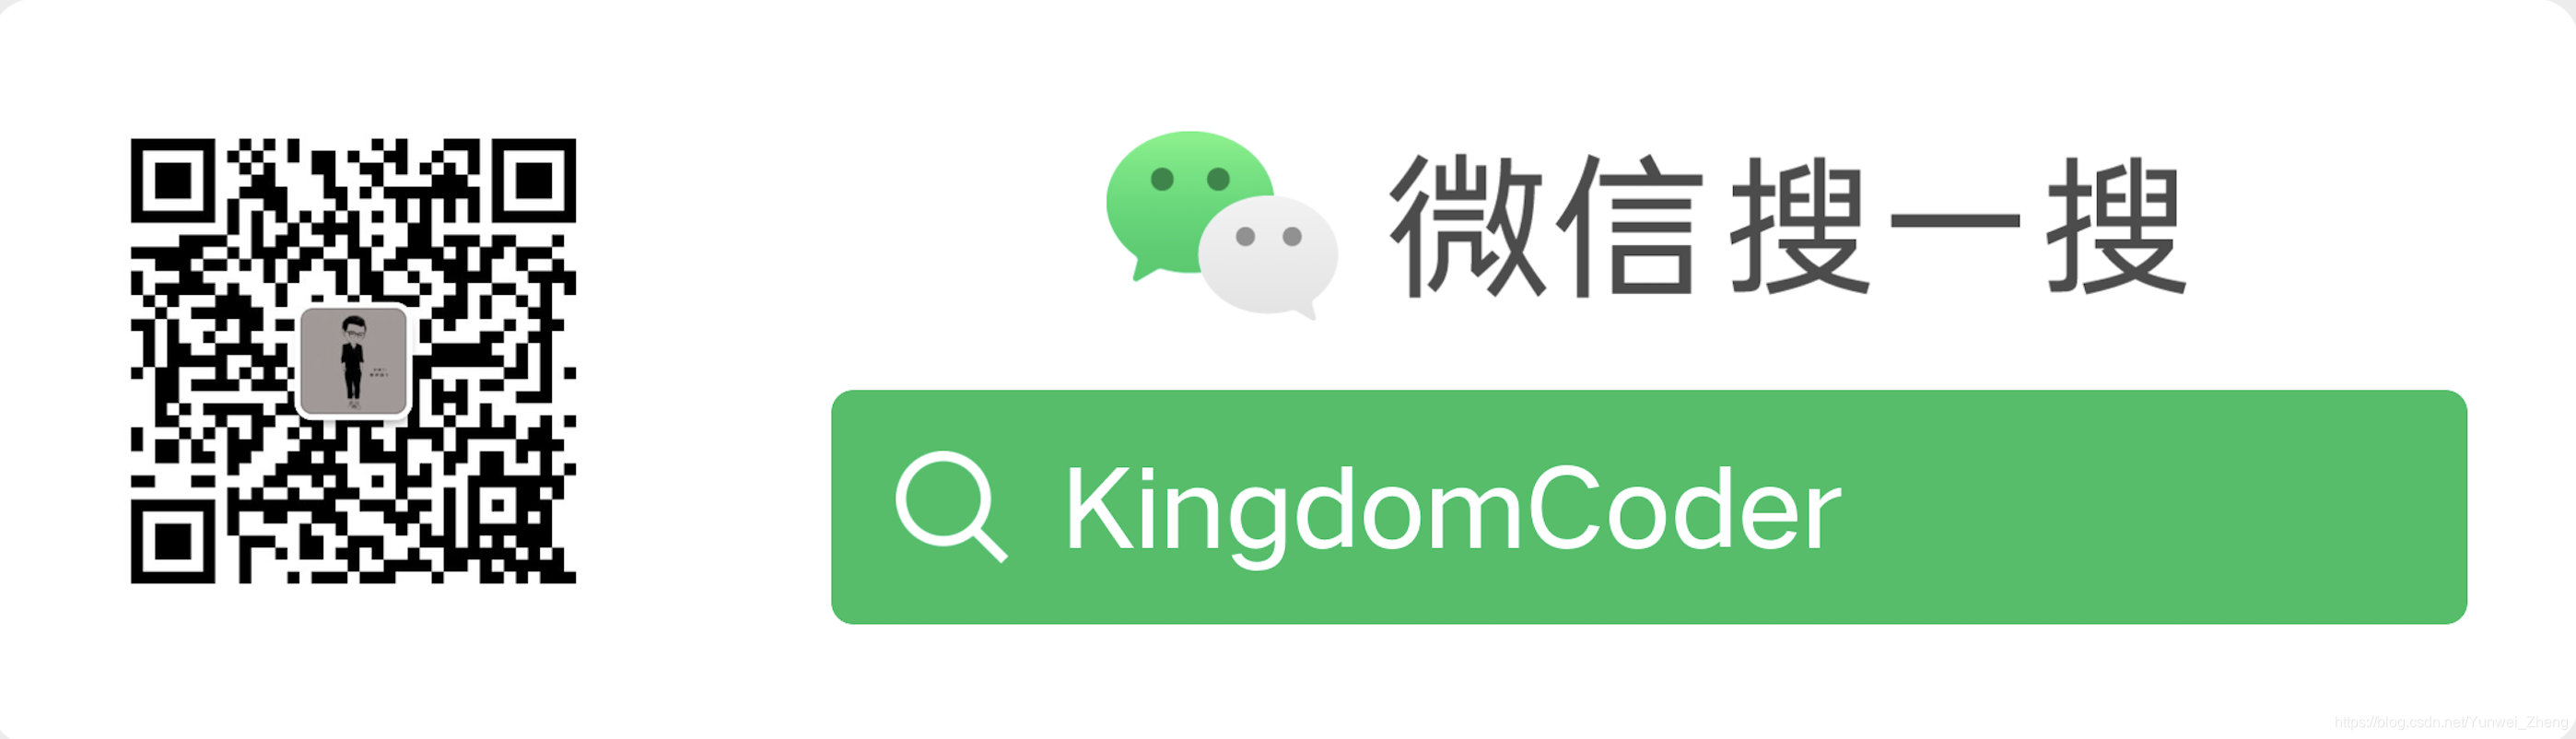 Compte public WeChat